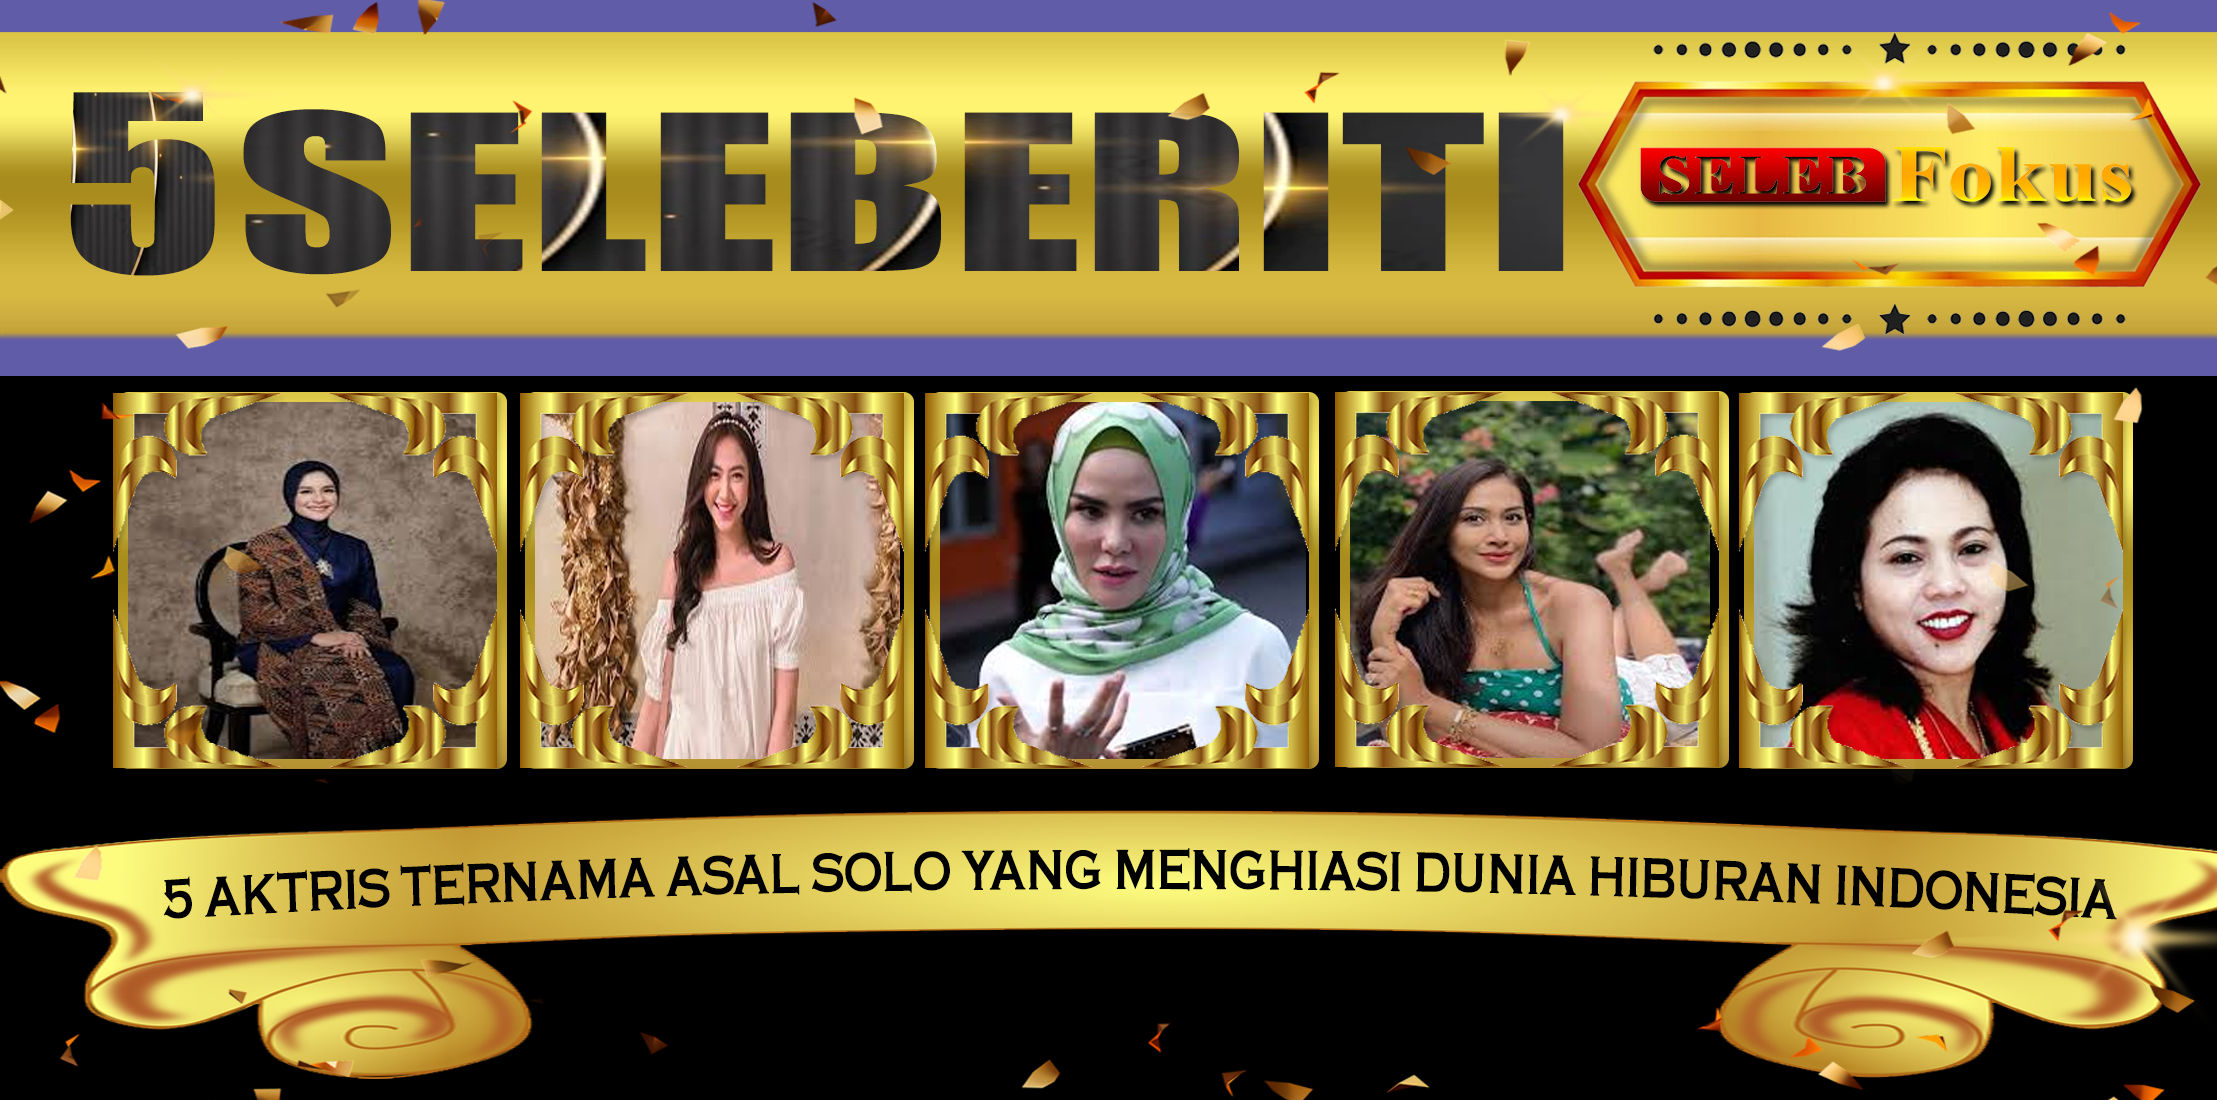 5 Aktris Wanita Solo yang Menghiasi Dunia Hiburan Indonesia